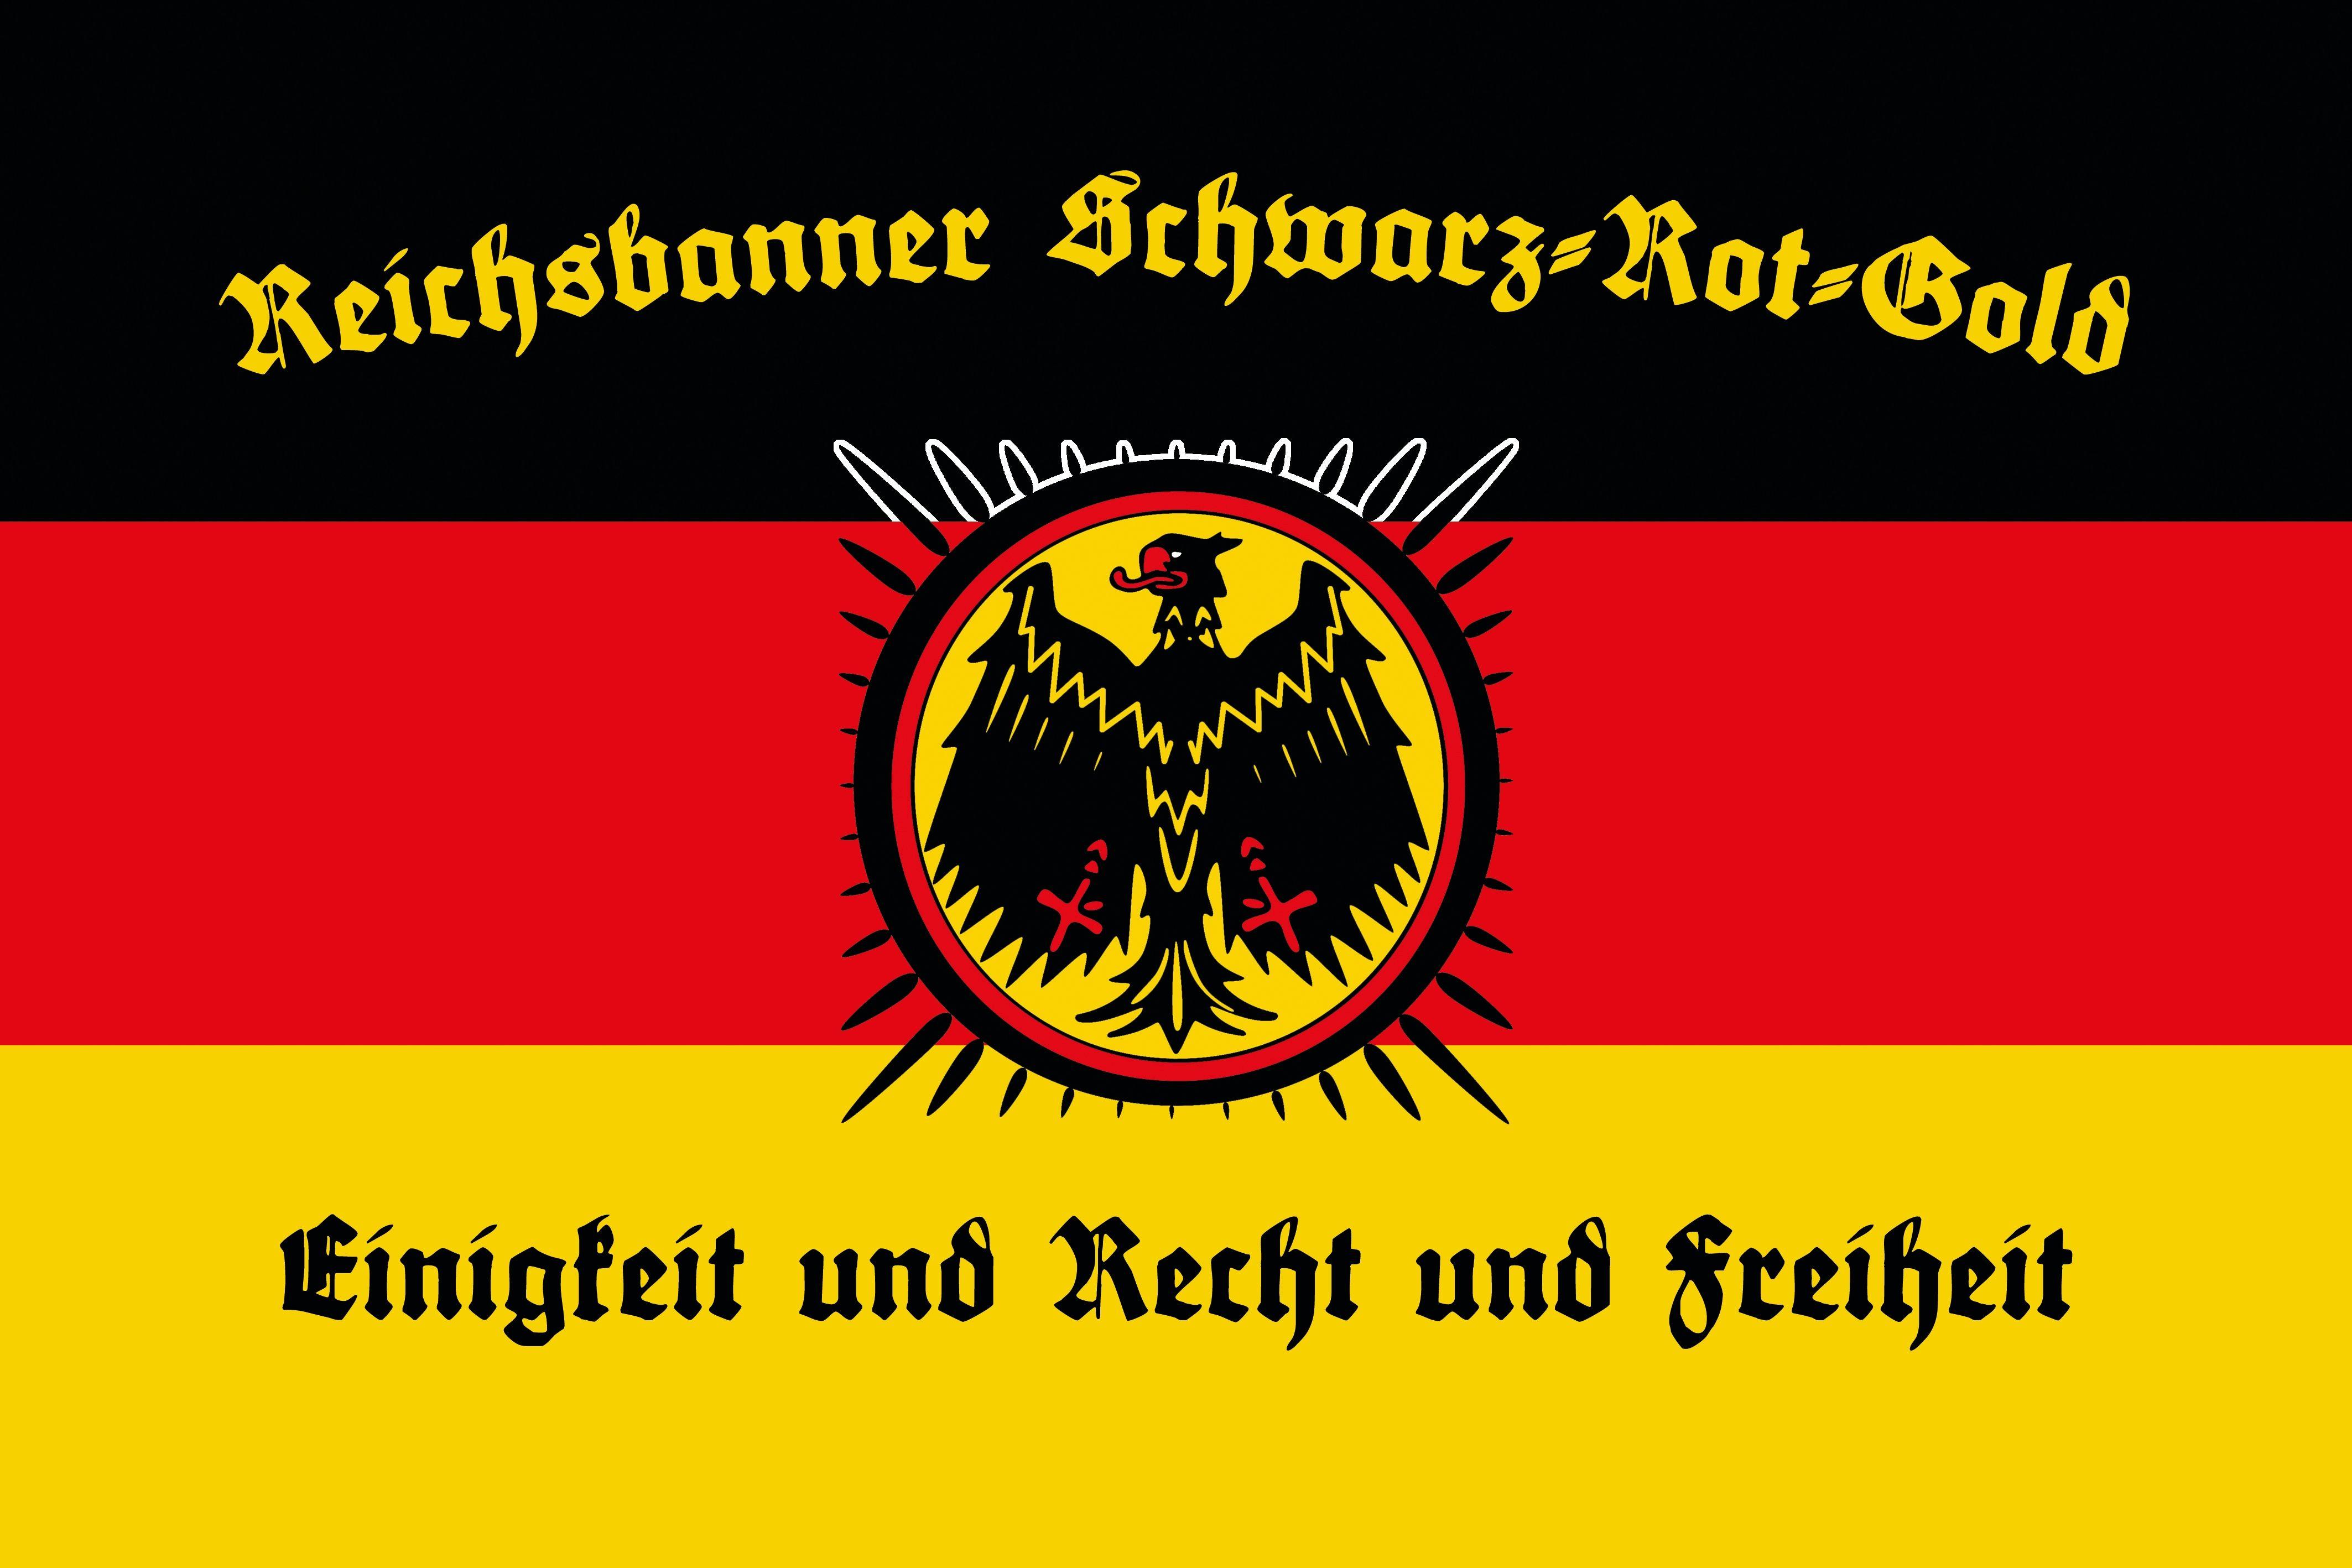 Black Red and Gold Logo - Reichsbanner Schwarz Rot Gold